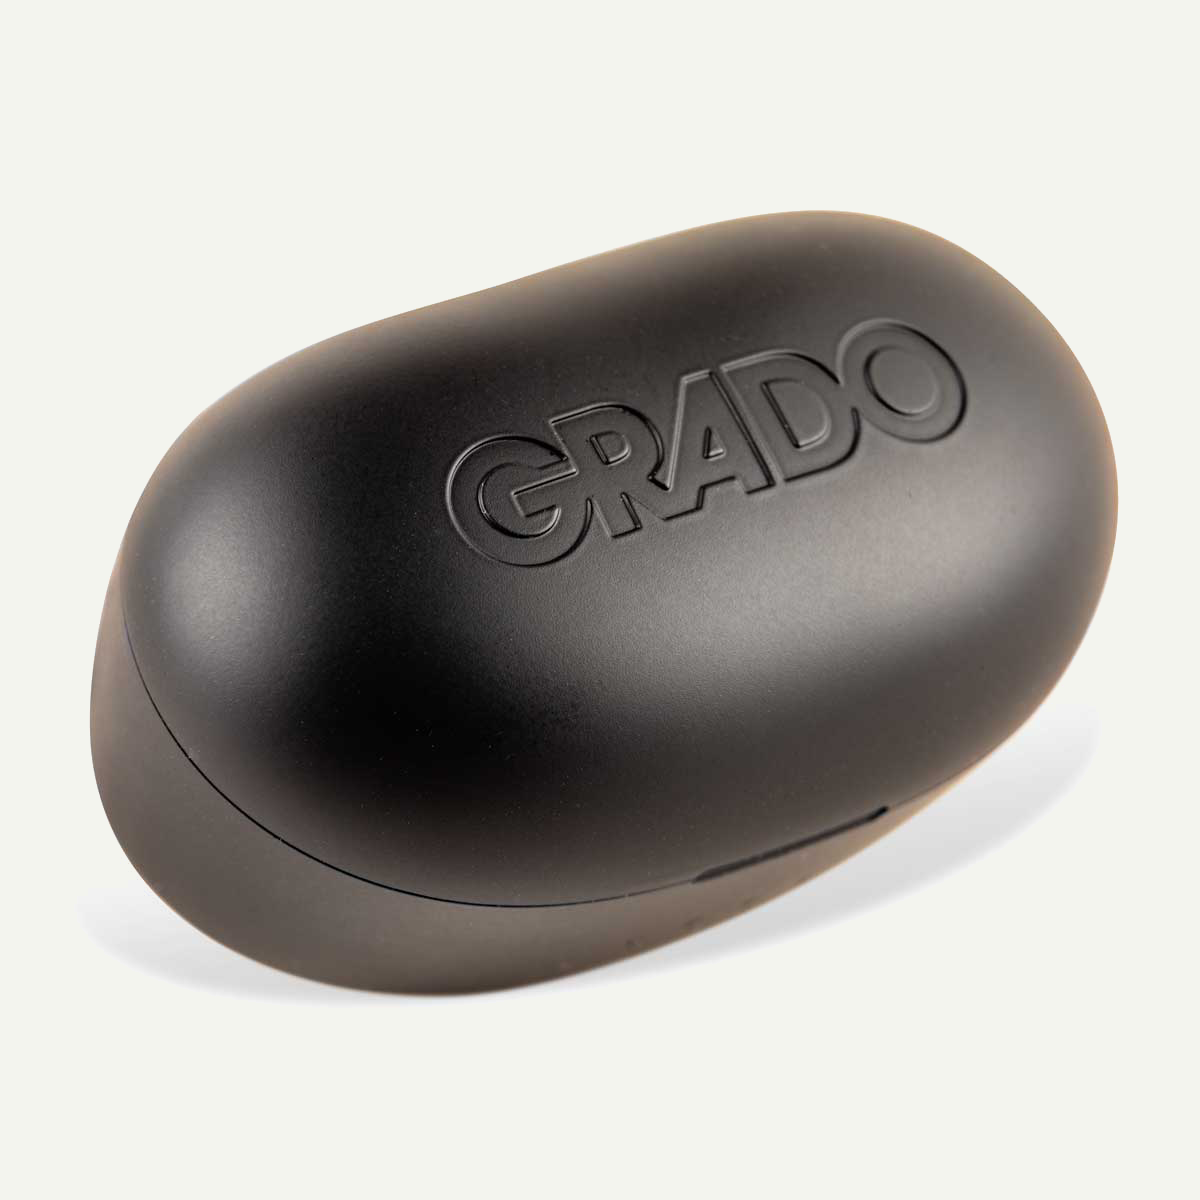 Grado GT220-wireless-Grado-PremiumHIFI